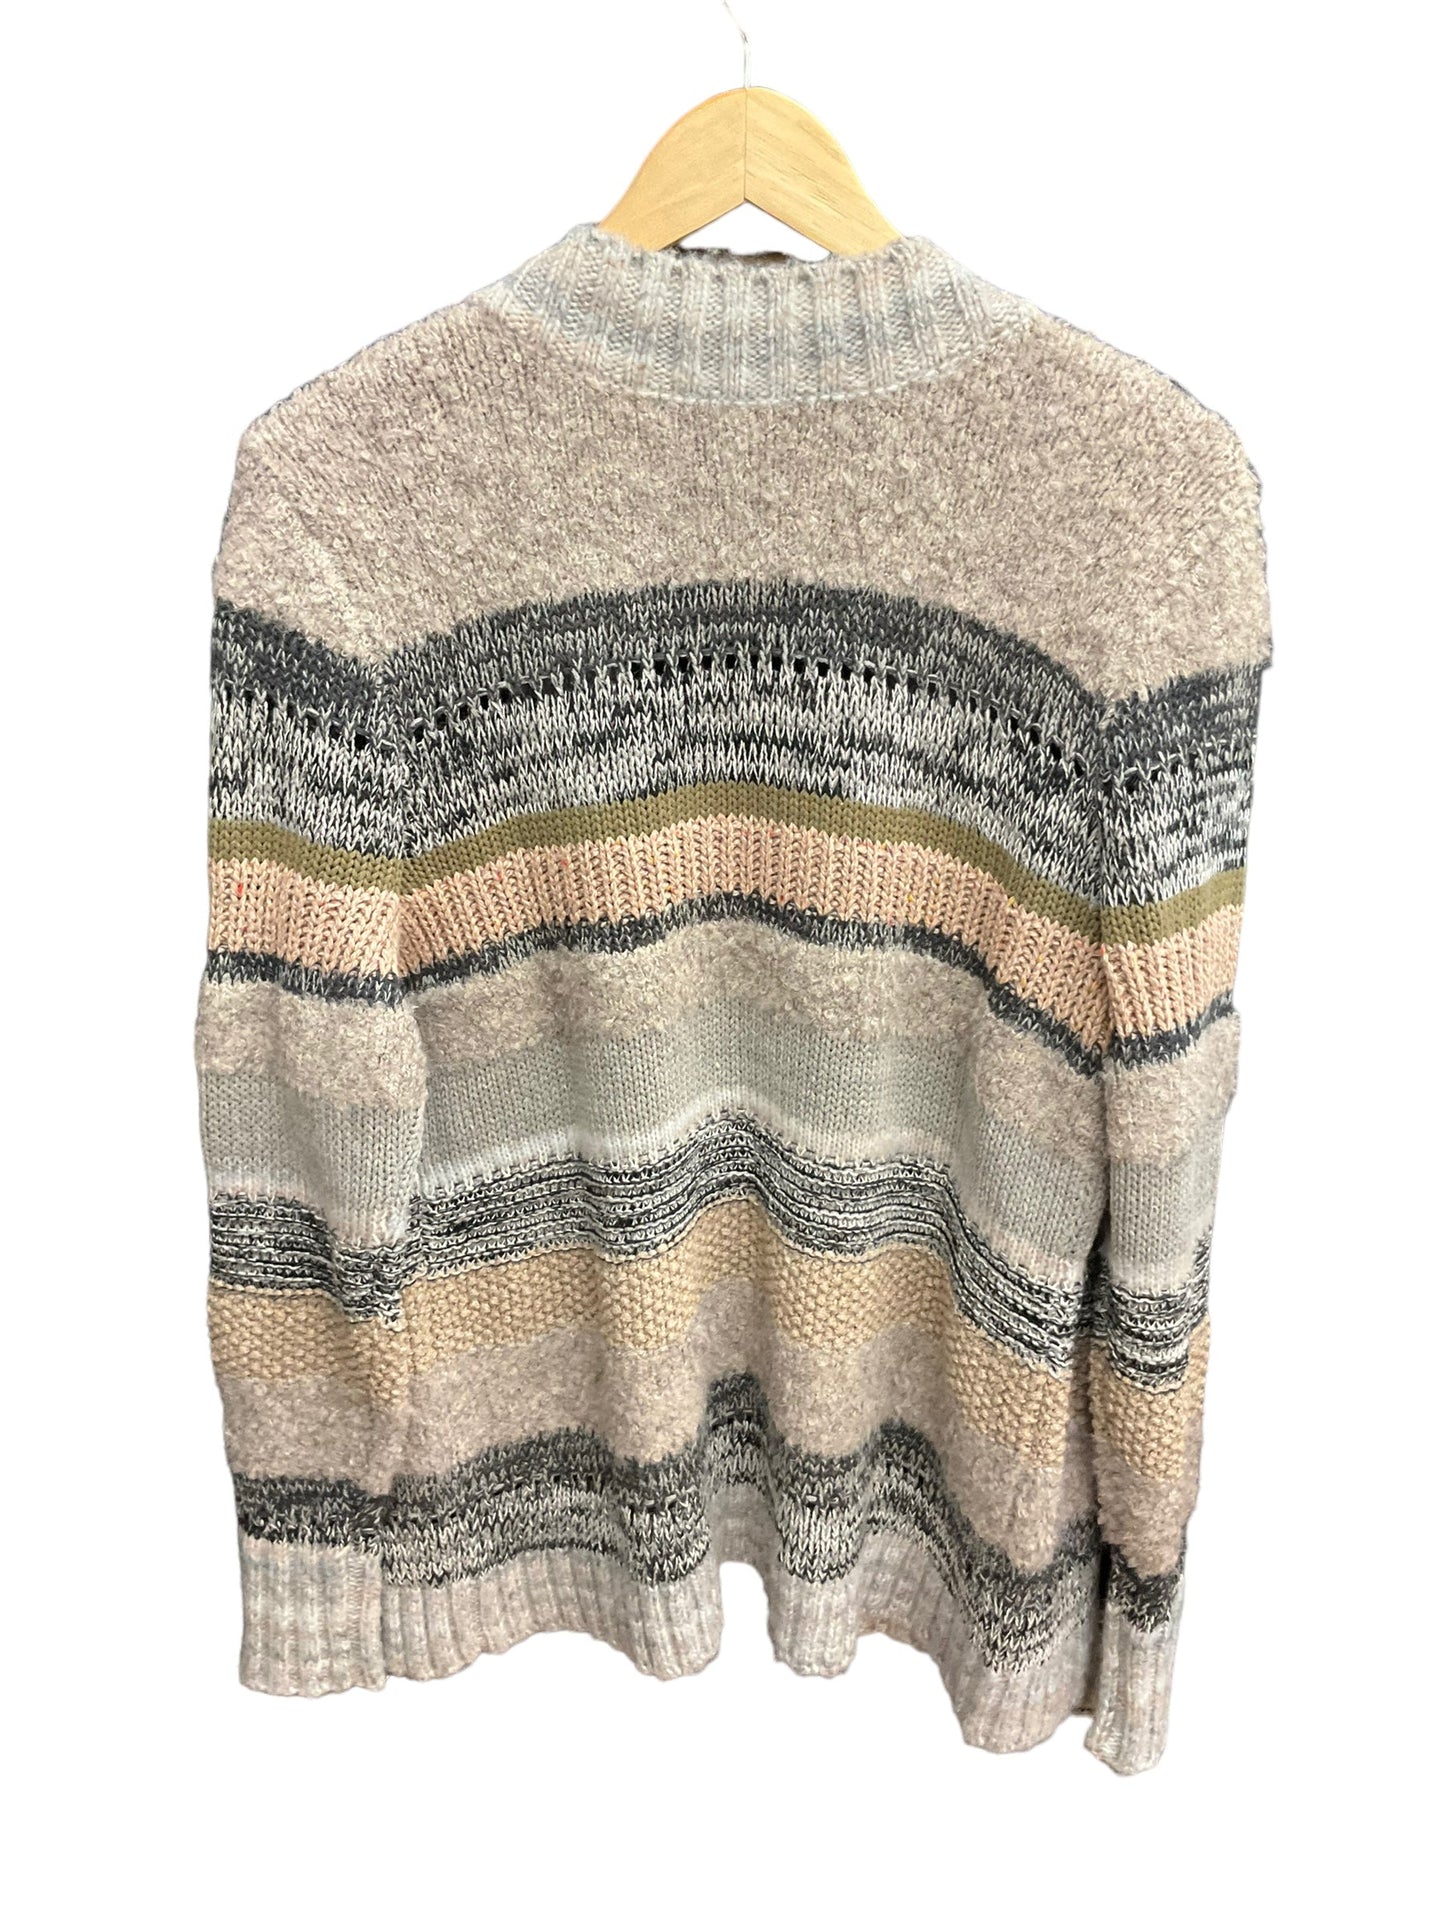 Multi-colored Sweater Cardigan Cabi, Size S